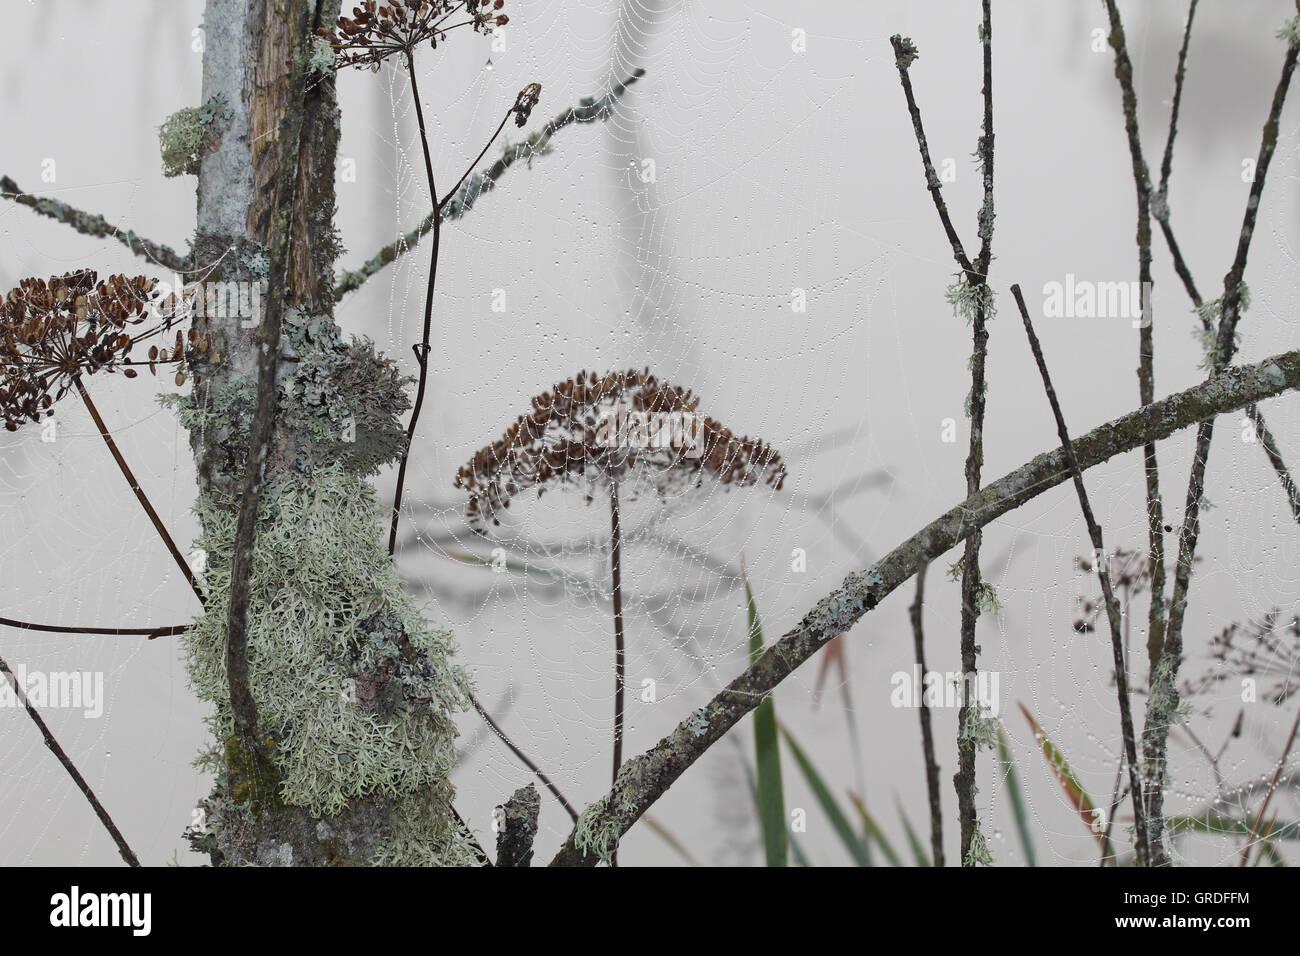 Moor, Beauté d'araignée avec des milliers de gouttes d'eau qui pendait entre les brindilles d'Herbes desséchées, et le tronc couverts de lichens Banque D'Images